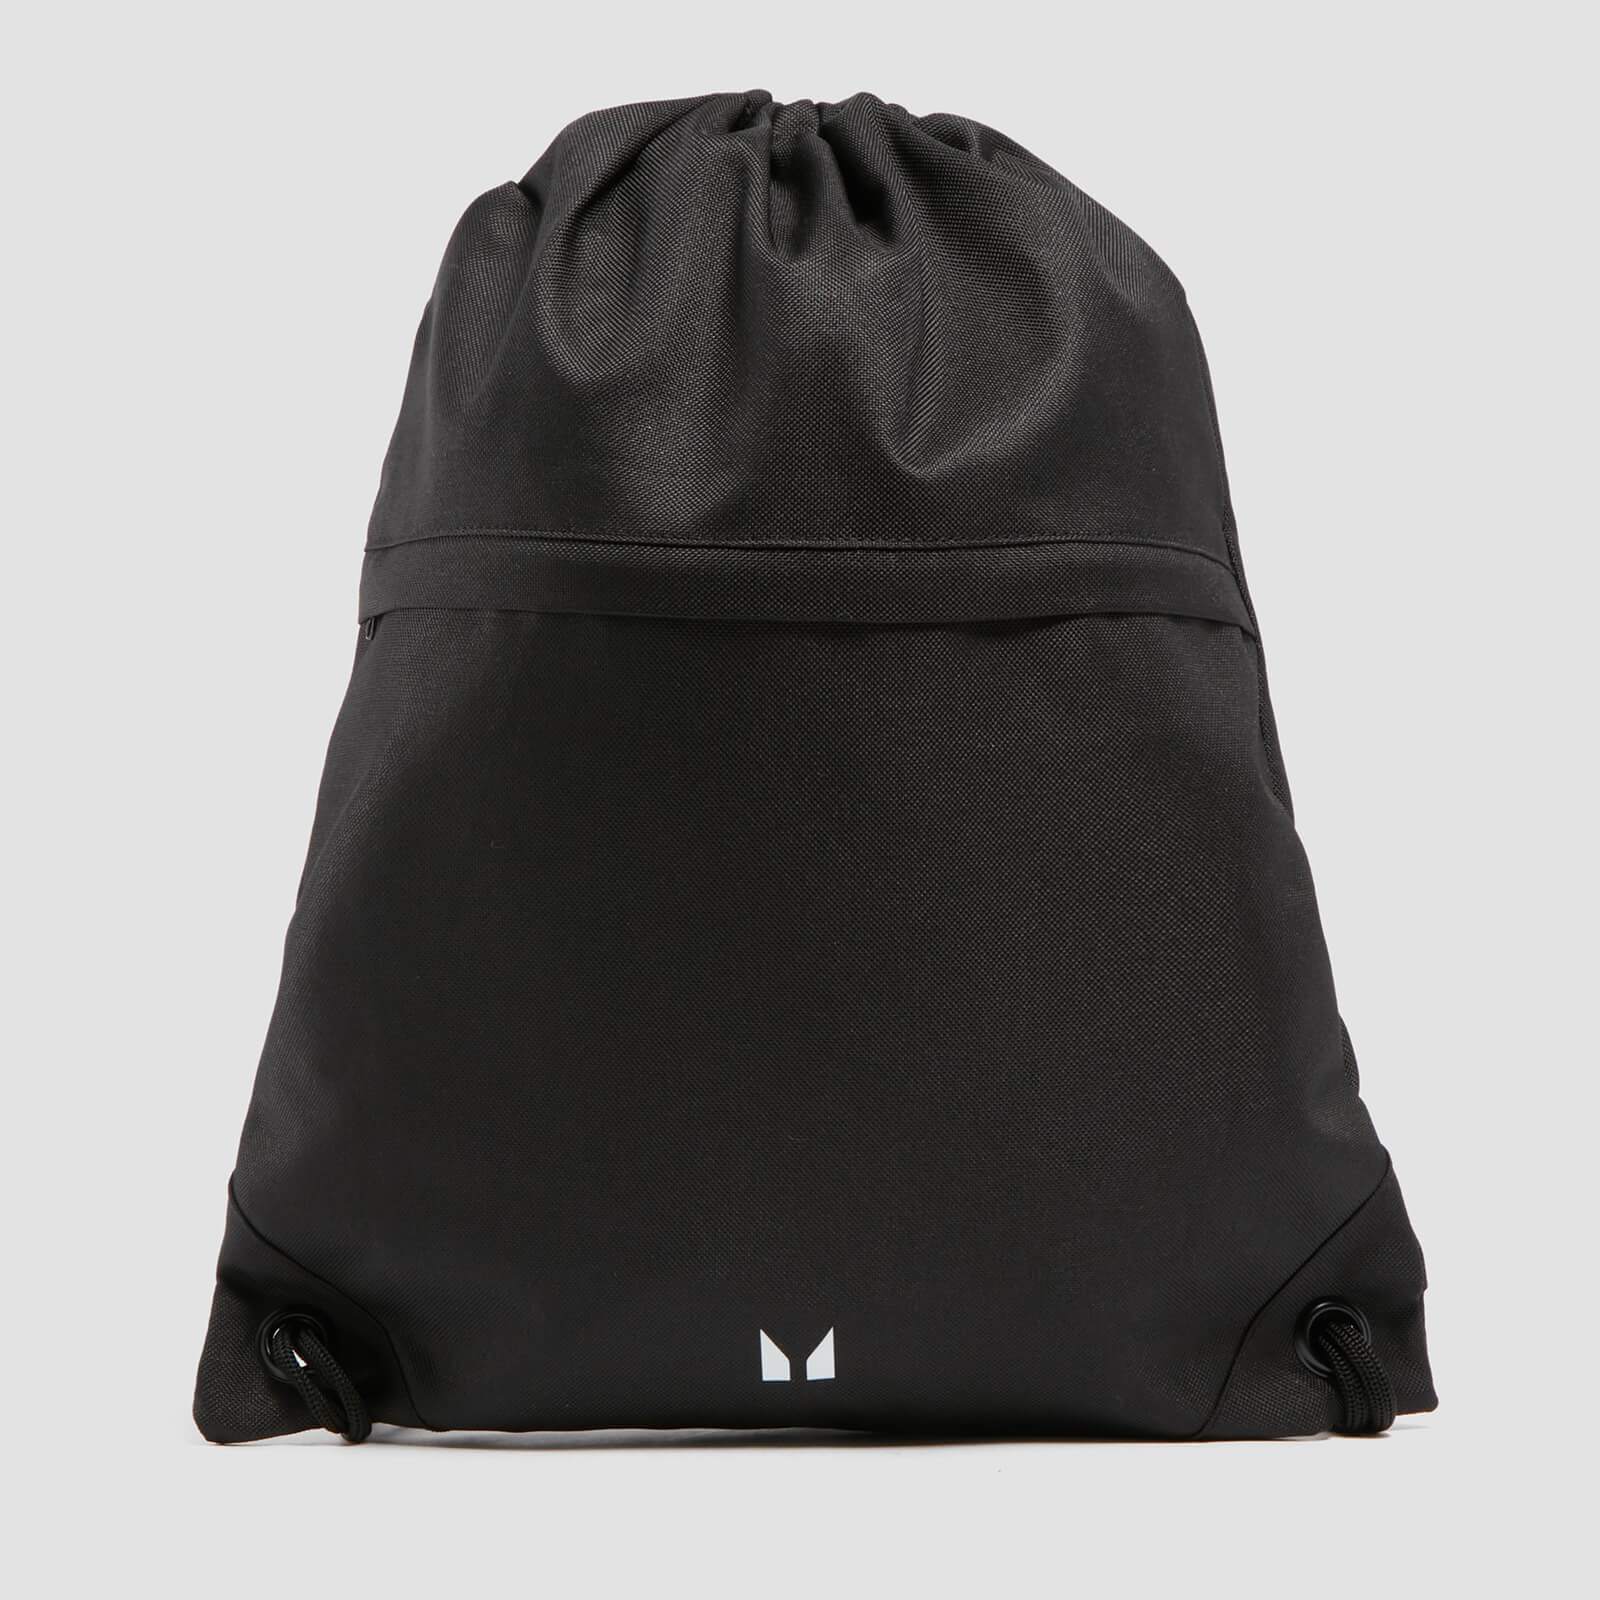 กระเป๋าหูรูด MP - สีดำ